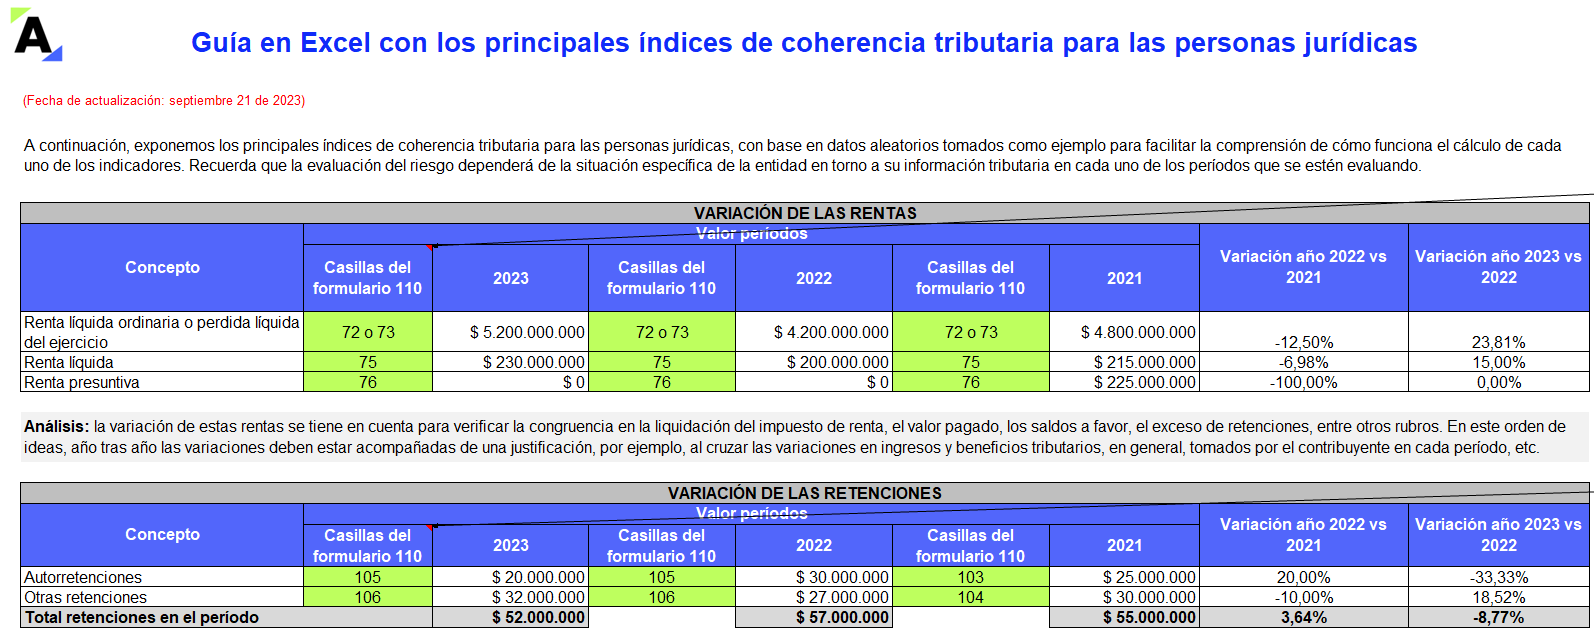 Guía en Excel con los principales índices de coherencia tributaria para las personas jurídicas  